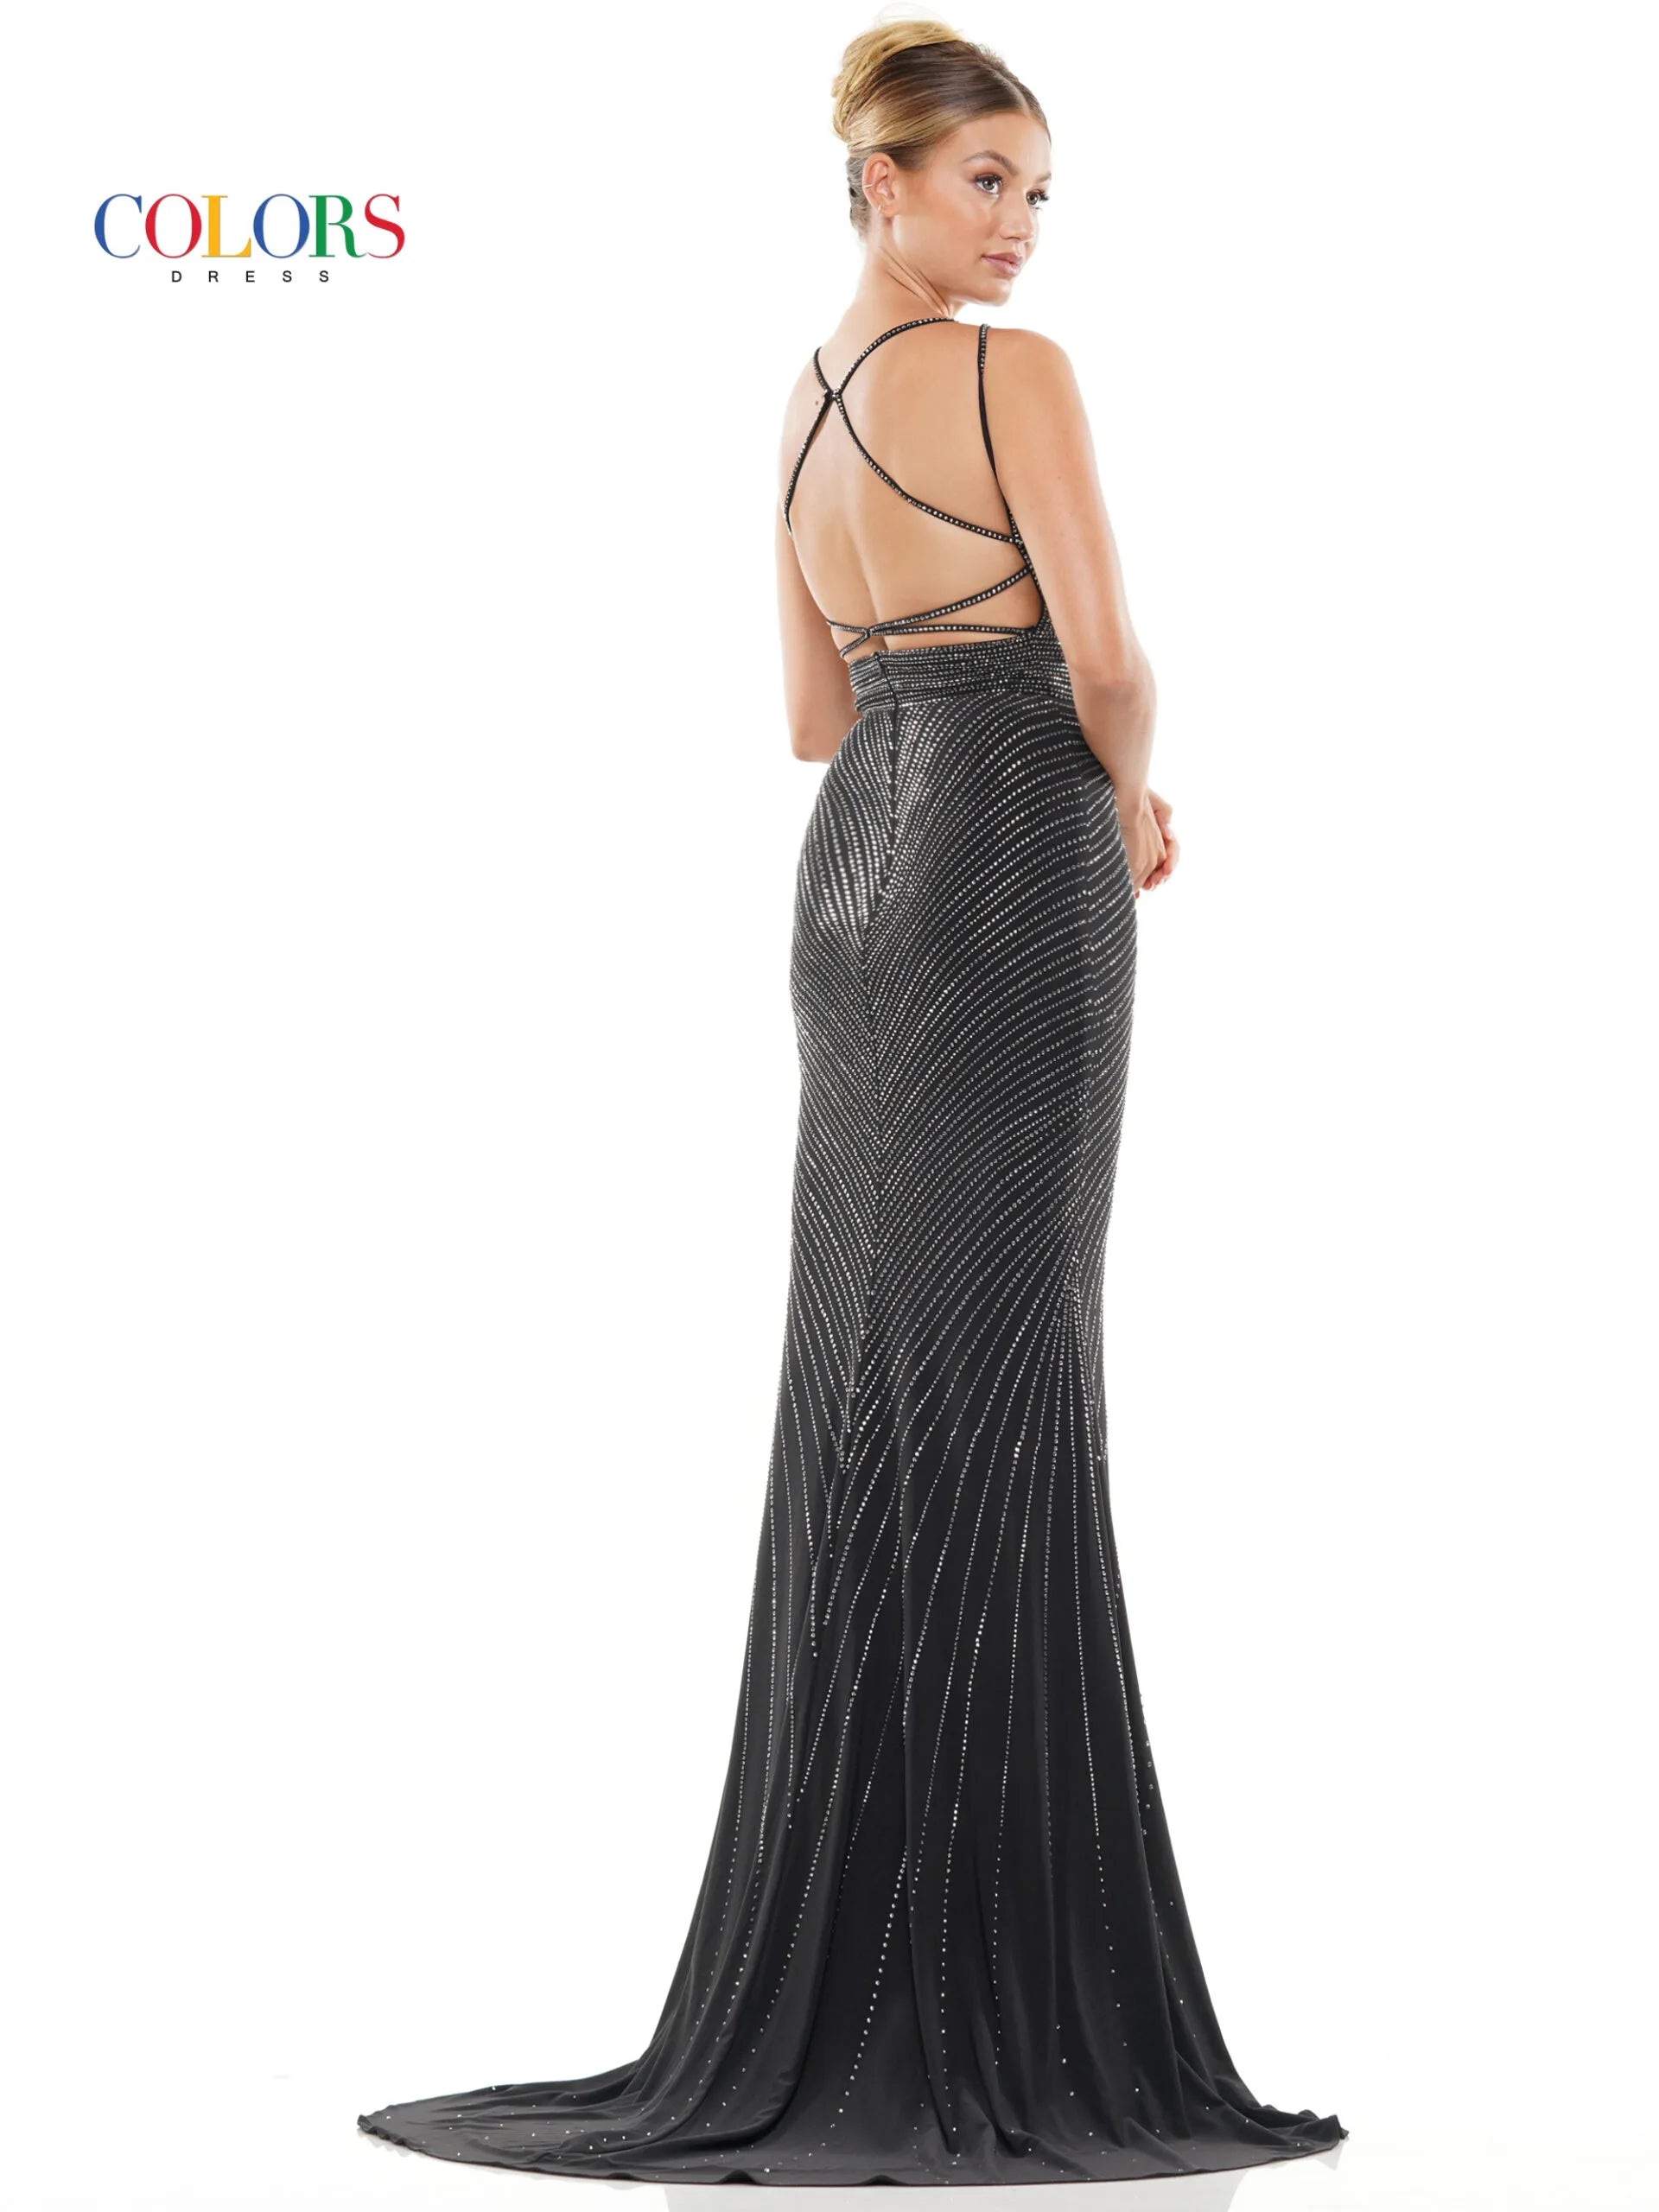 Gown : Black georgette floral digital printed gown